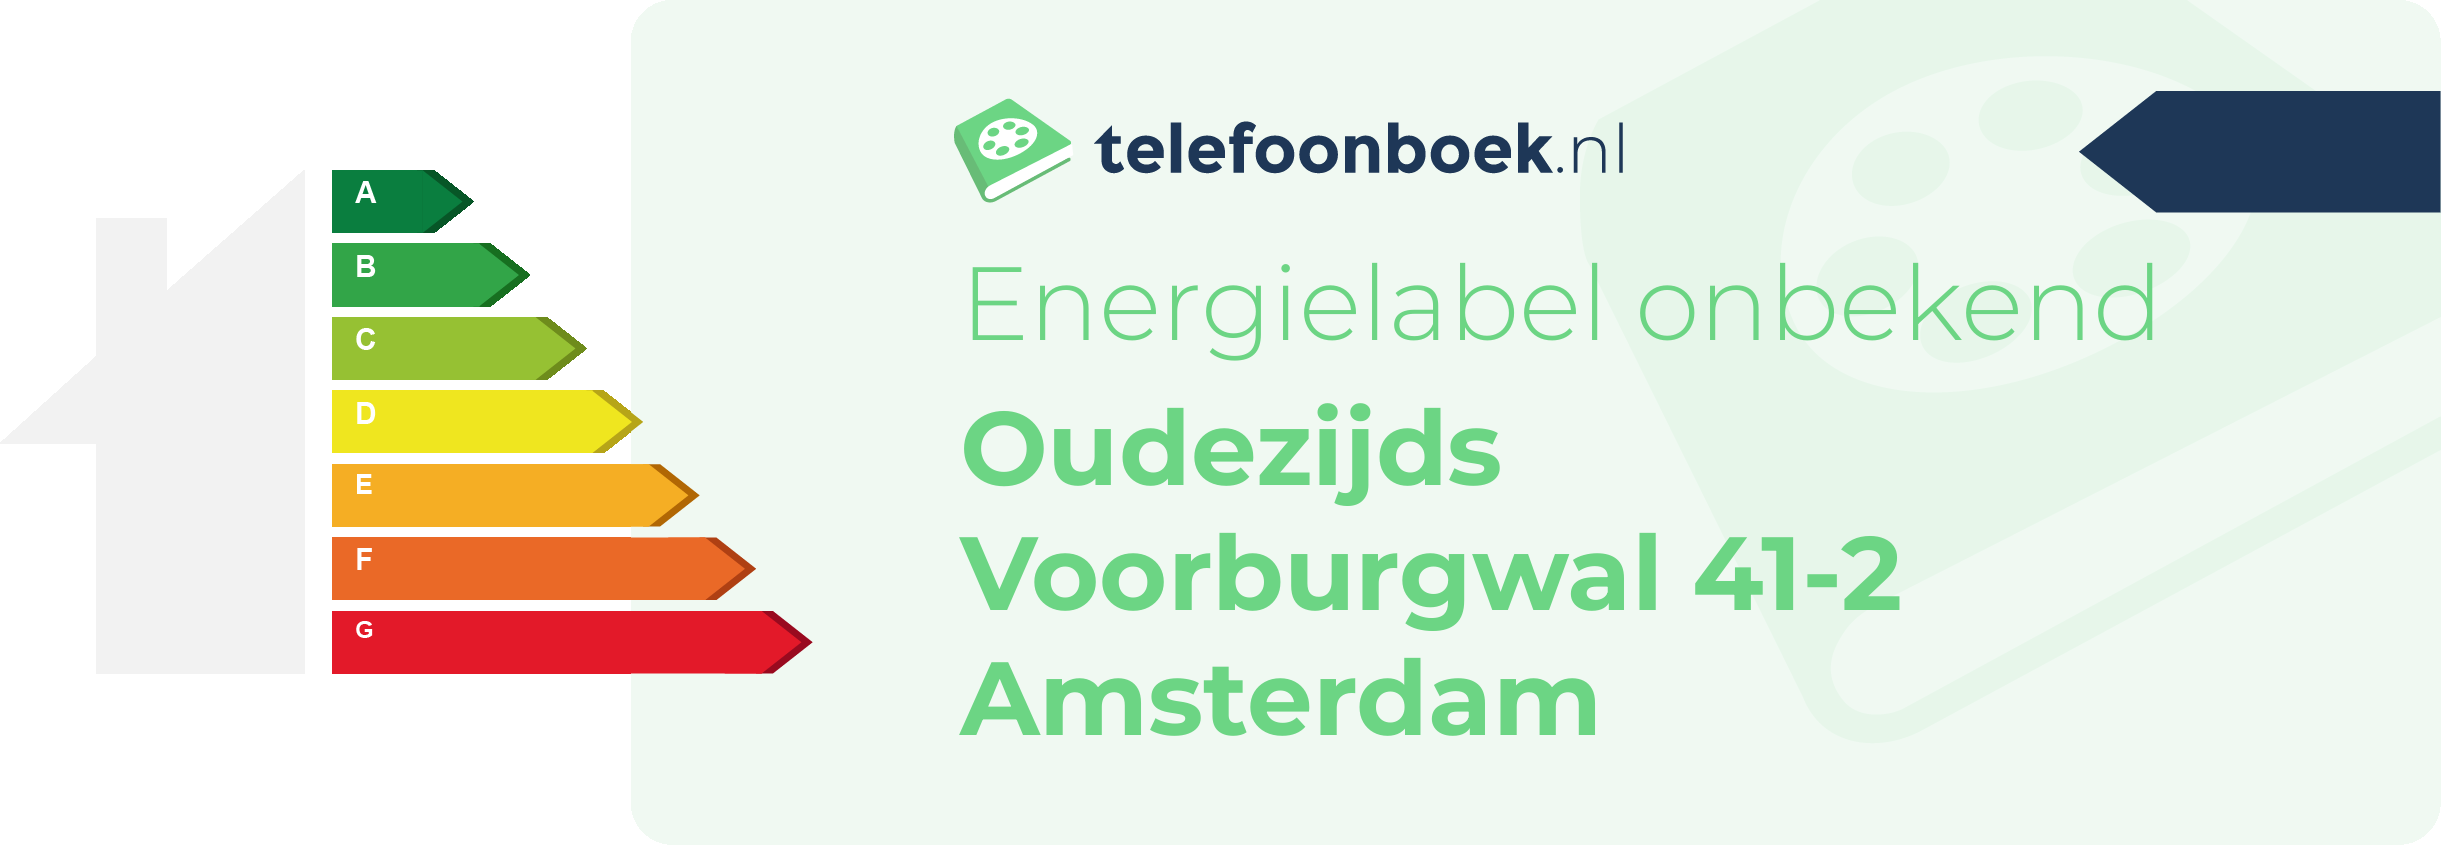 Energielabel Oudezijds Voorburgwal 41-2 Amsterdam